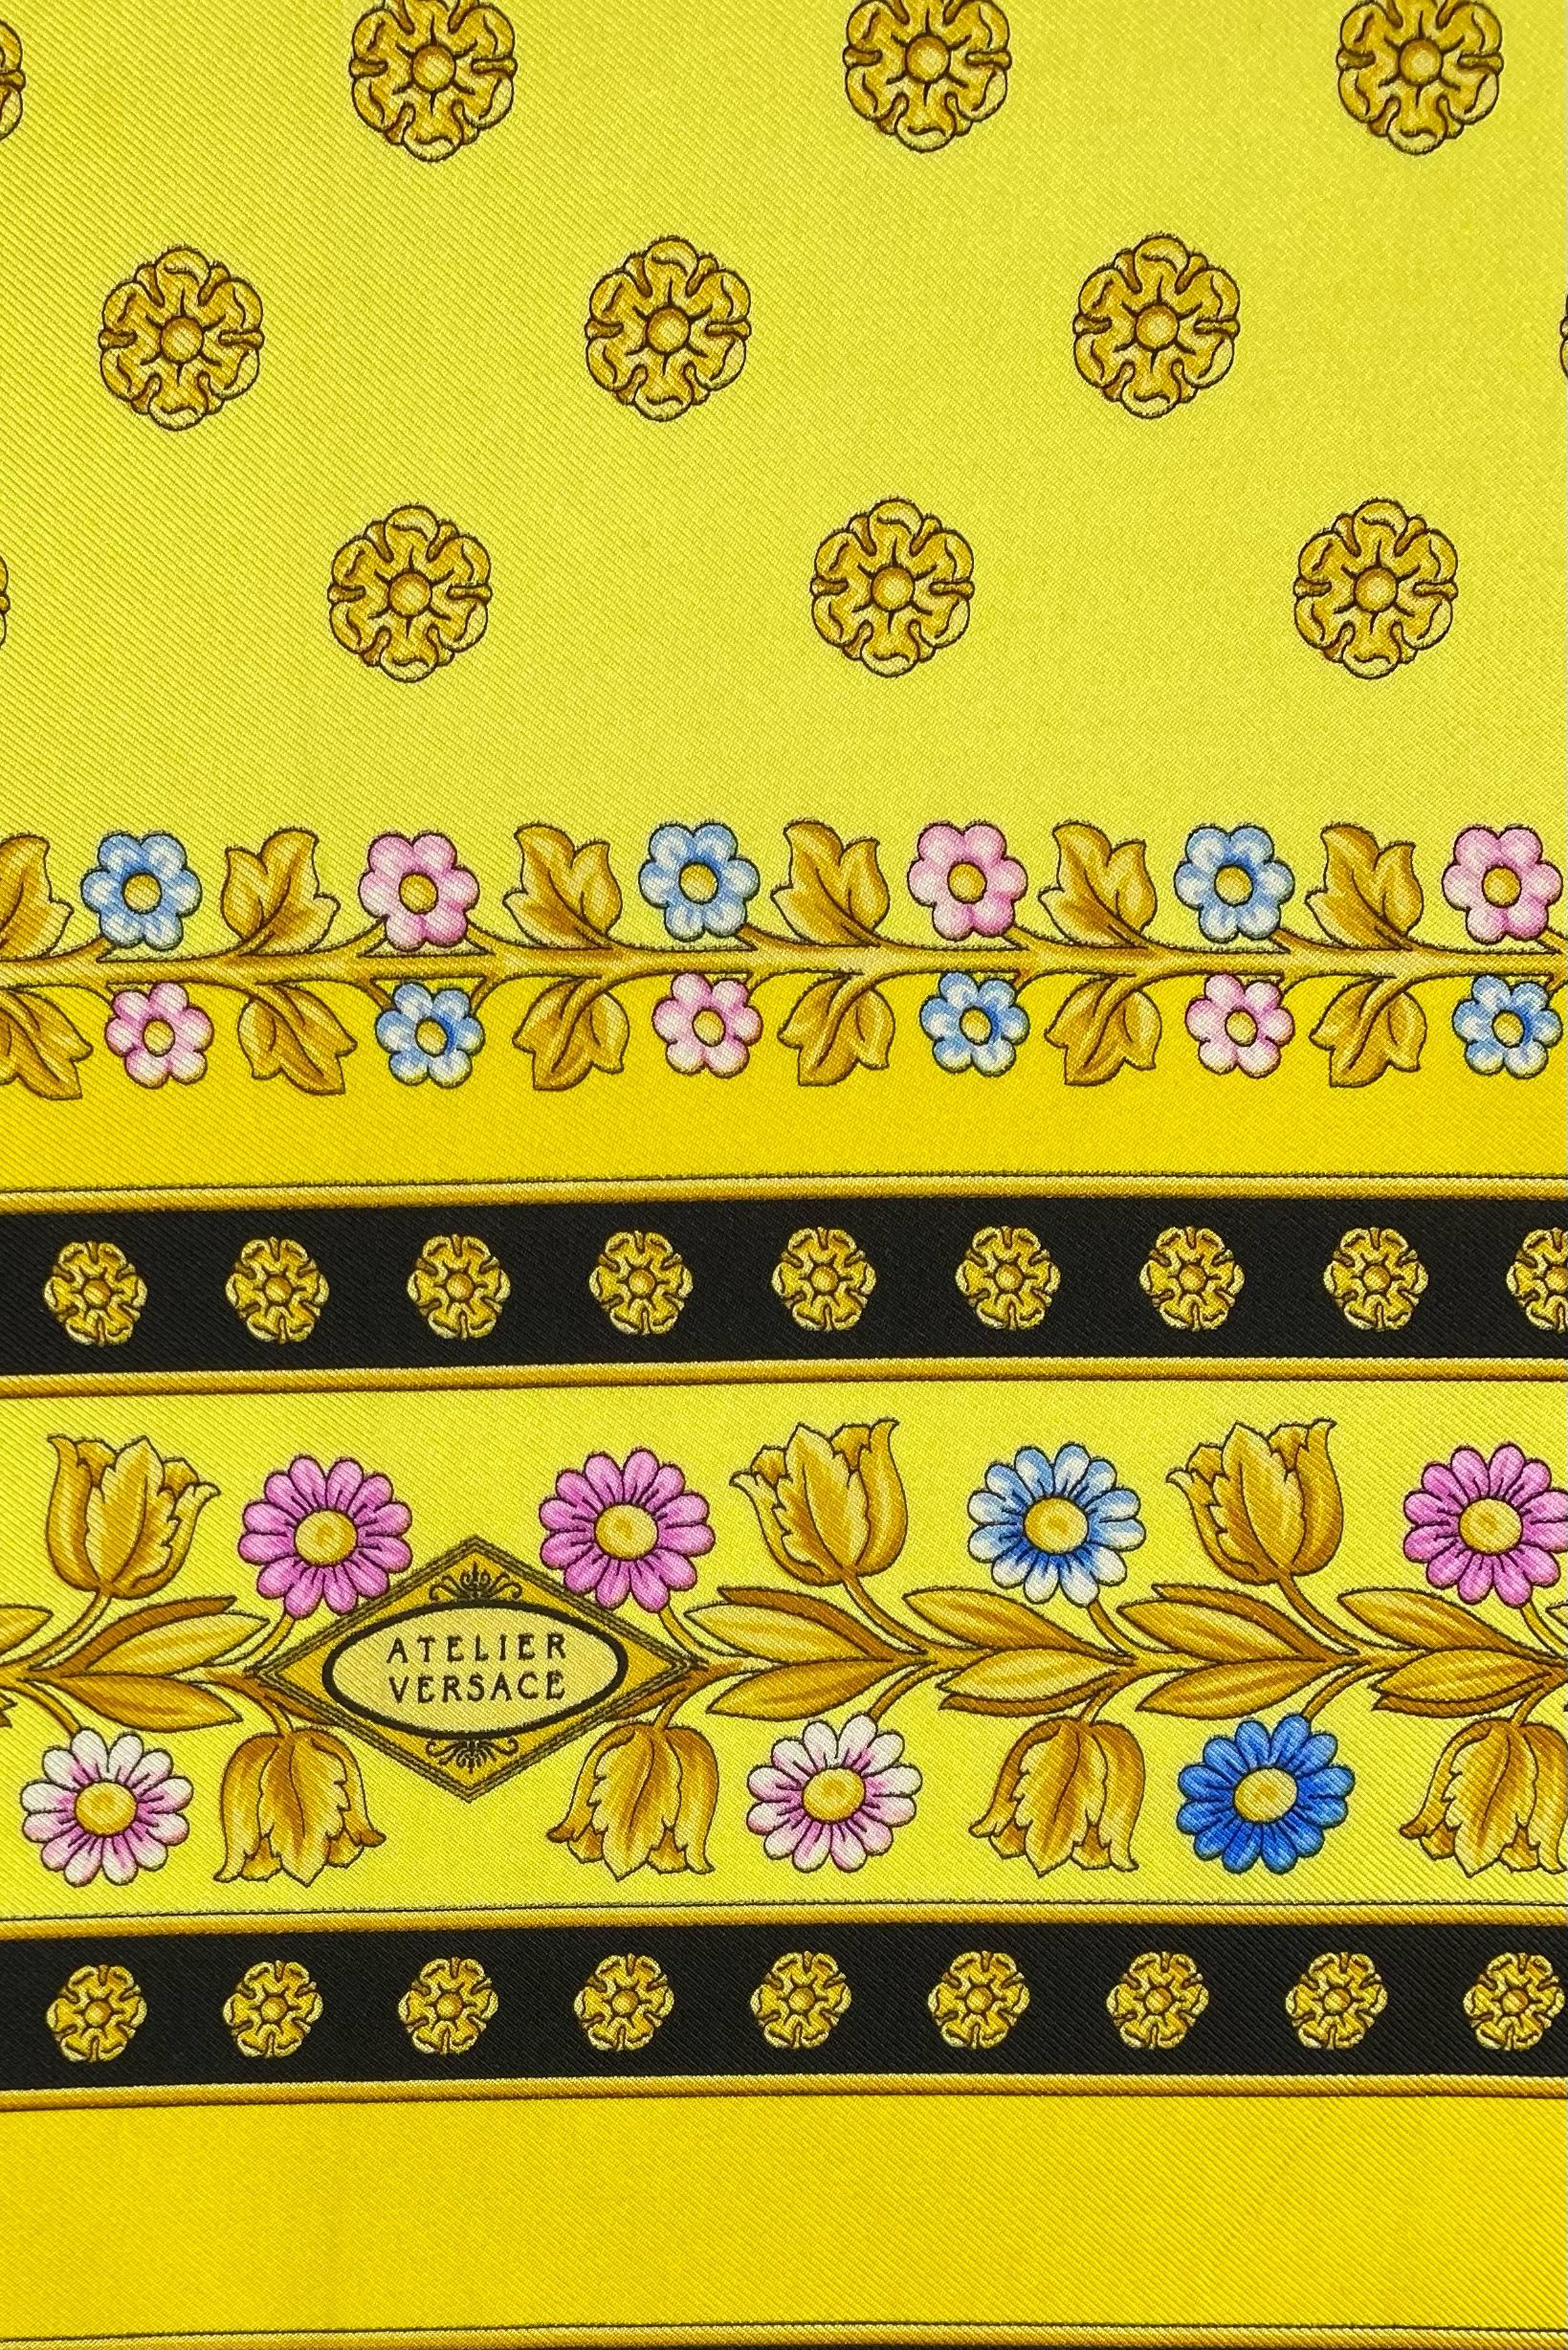 Voici un magnifique foulard en soie Atelier Versace, dessiné par Gianni Versace. Cette écharpe lumineuse représente l'un des  Les motifs baroques classiques de Versace avec des motifs floraux. Le logo de la Méduse est présent directement au milieu